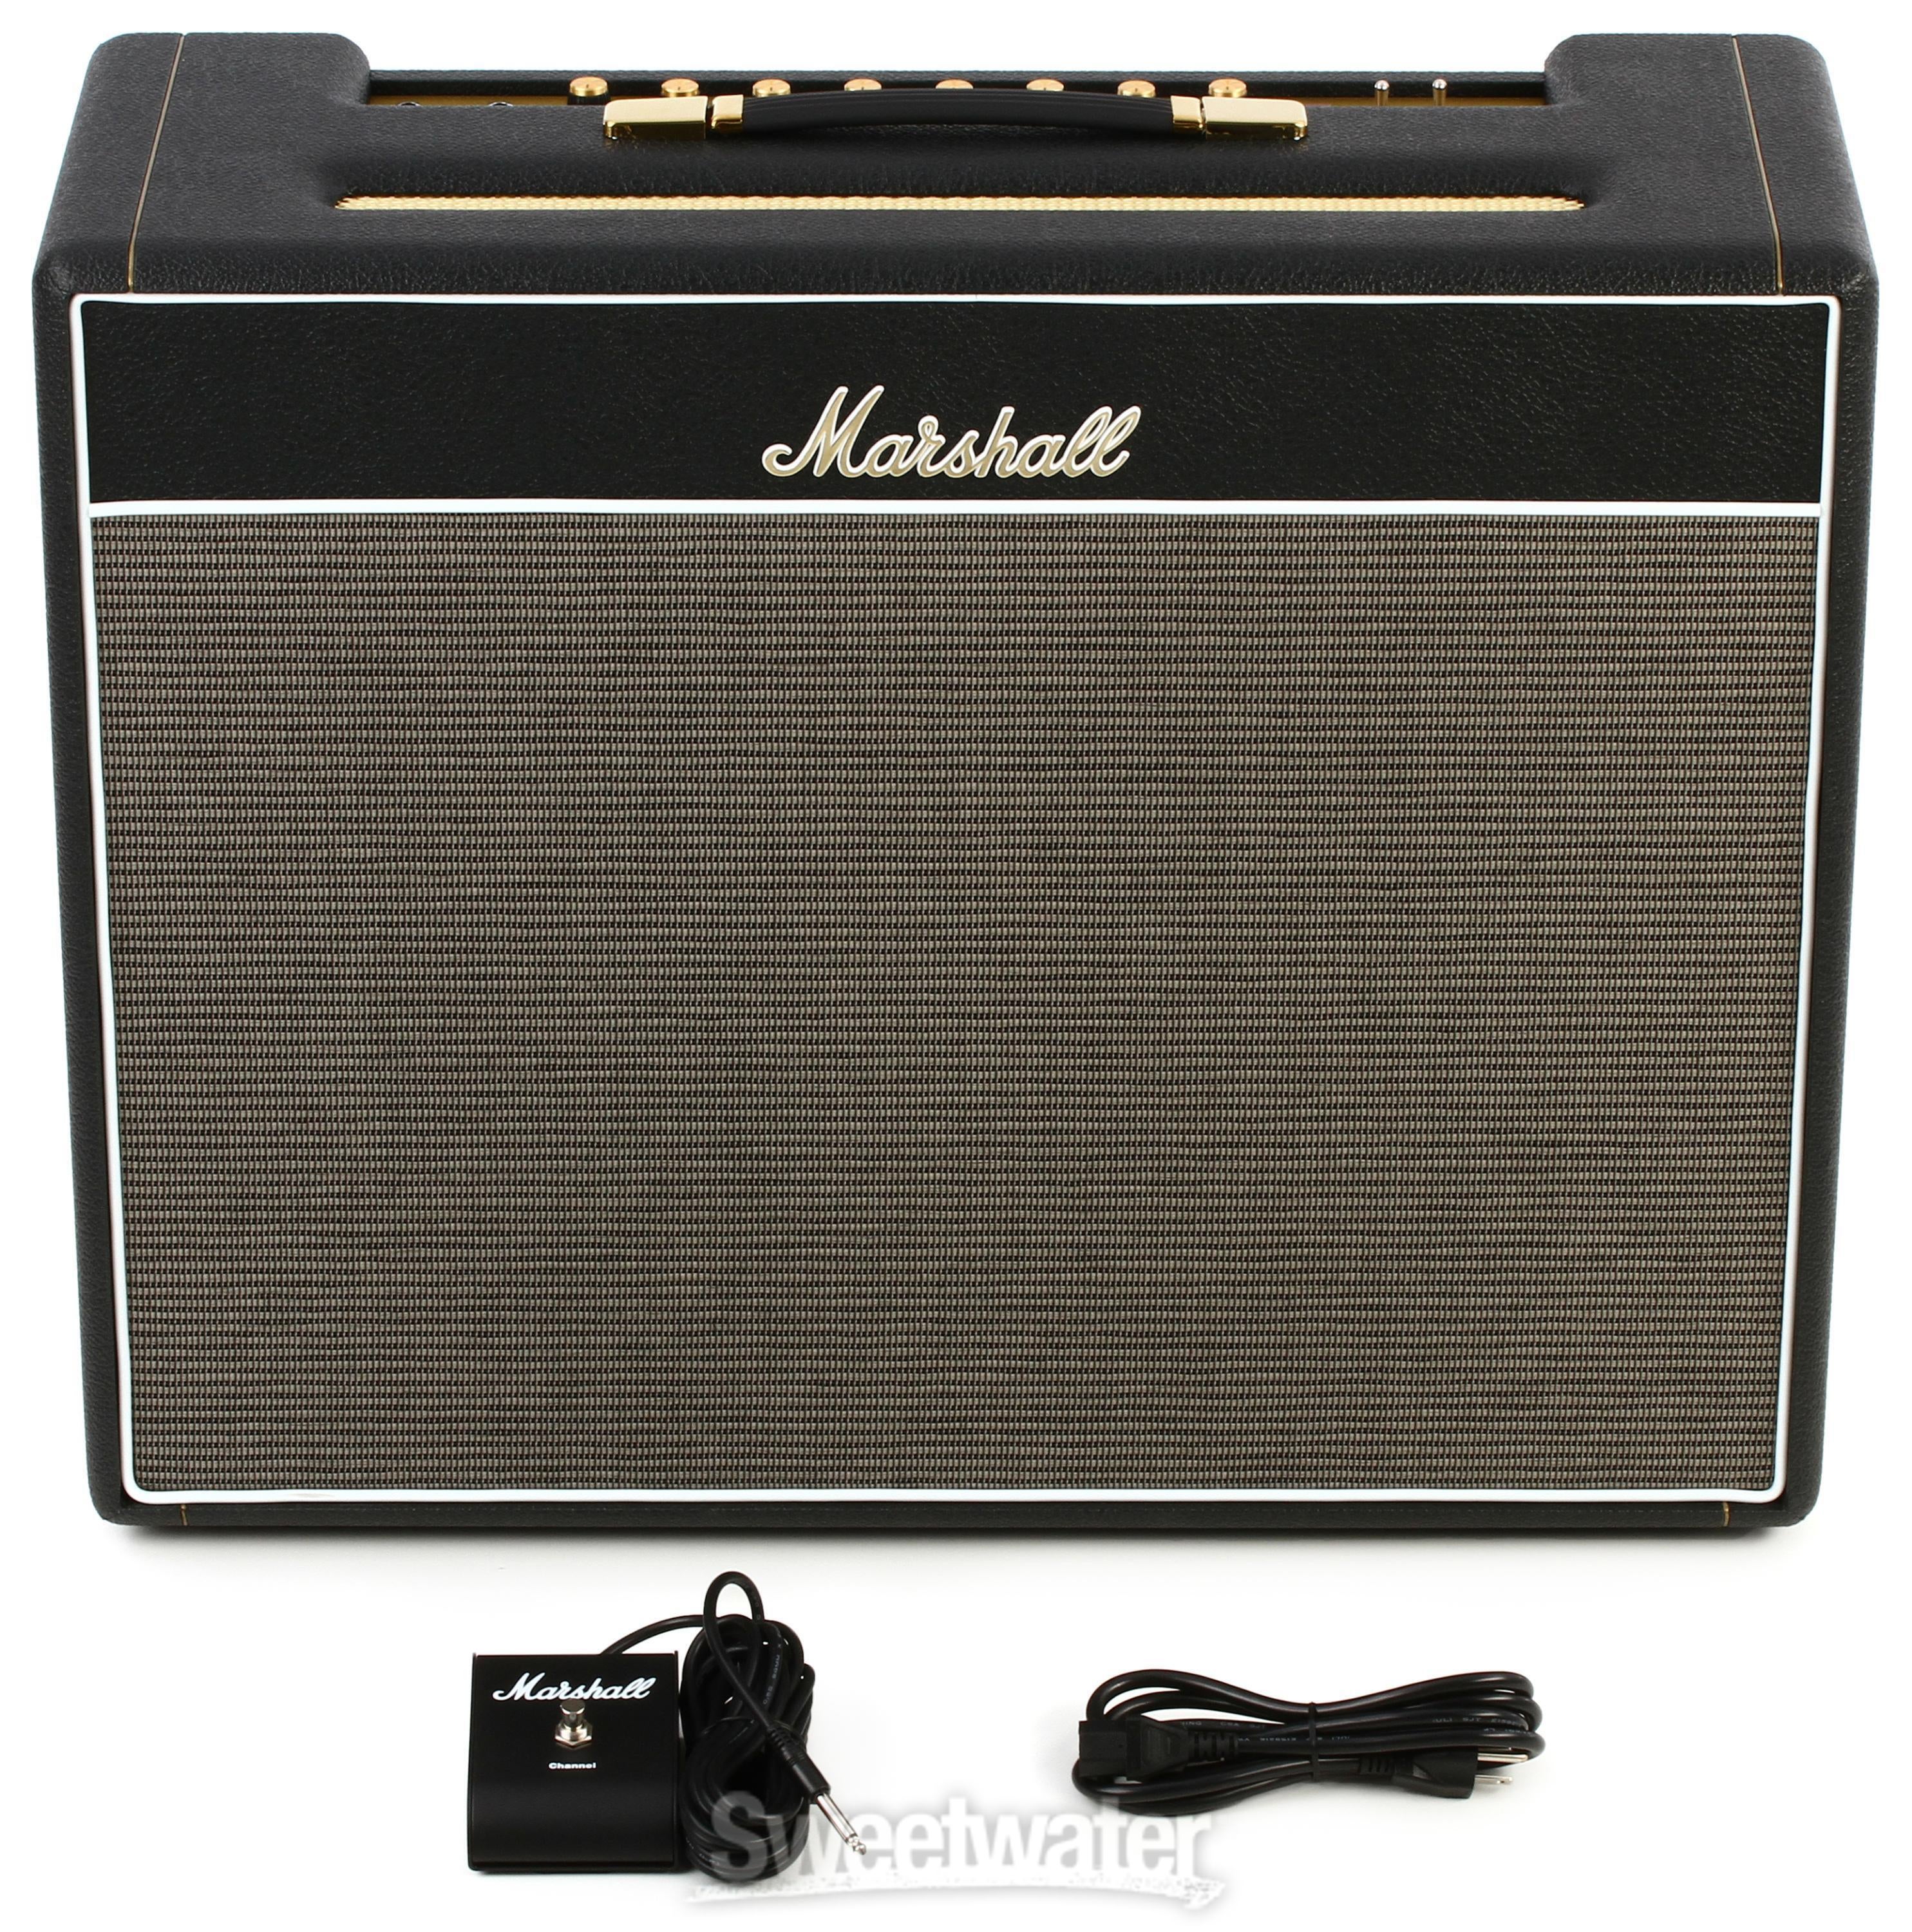 Marshall 1962 Bluesbreaker 30-watt 2x12